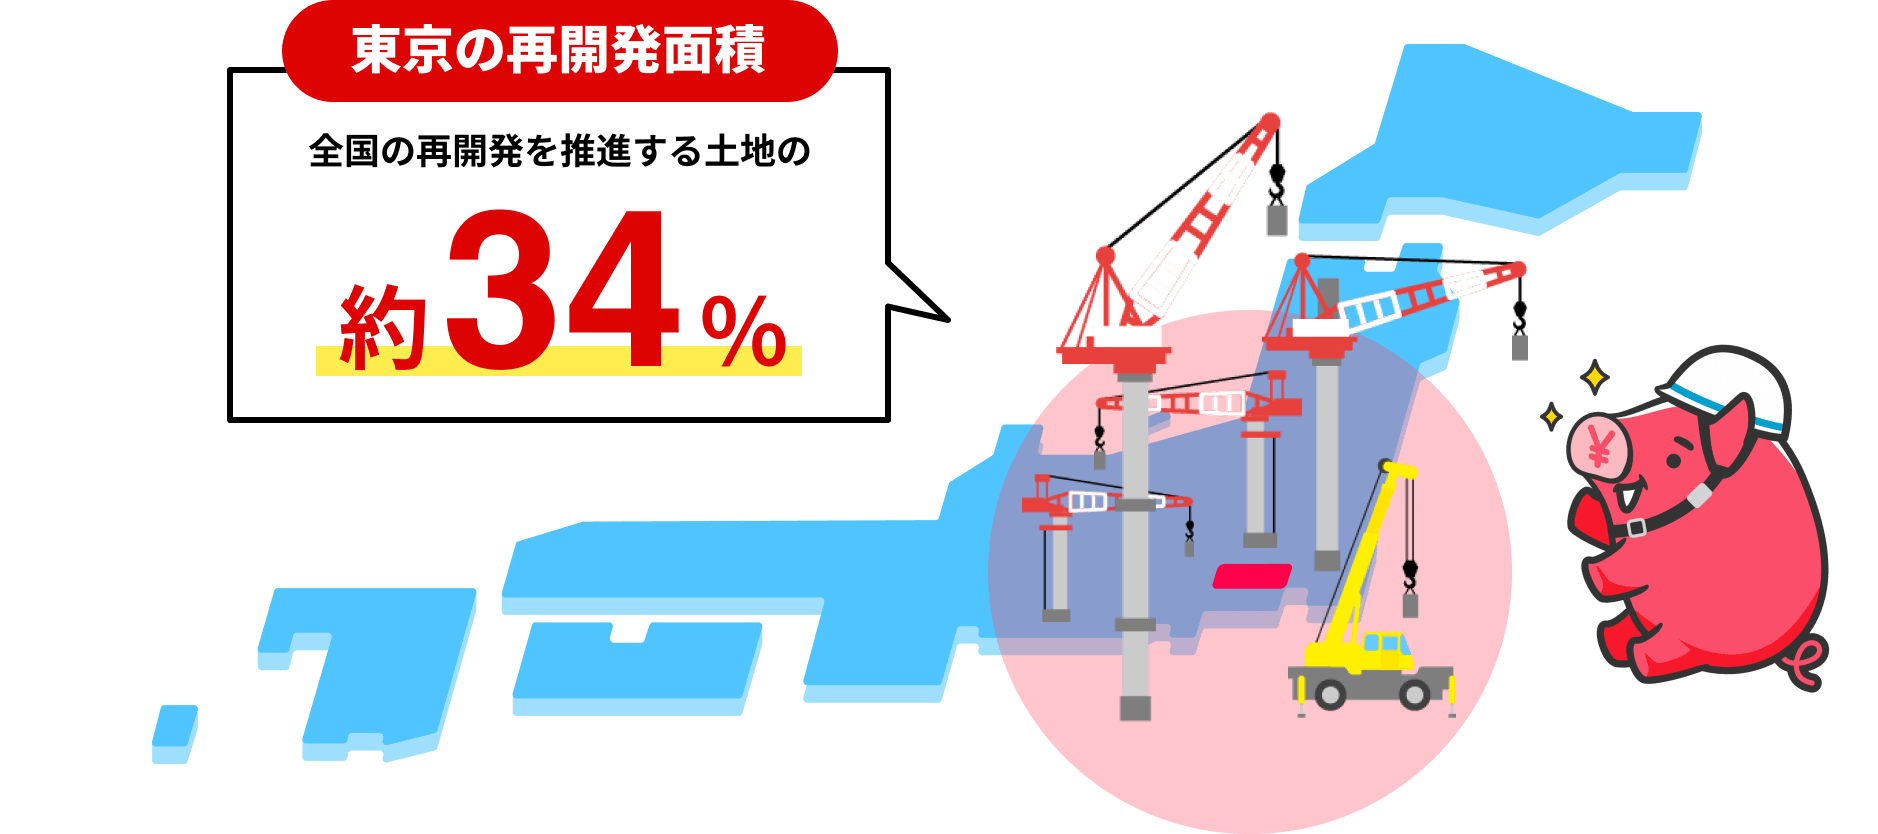 東京の再開発面積 全国の再開発を推進する土地の約34%